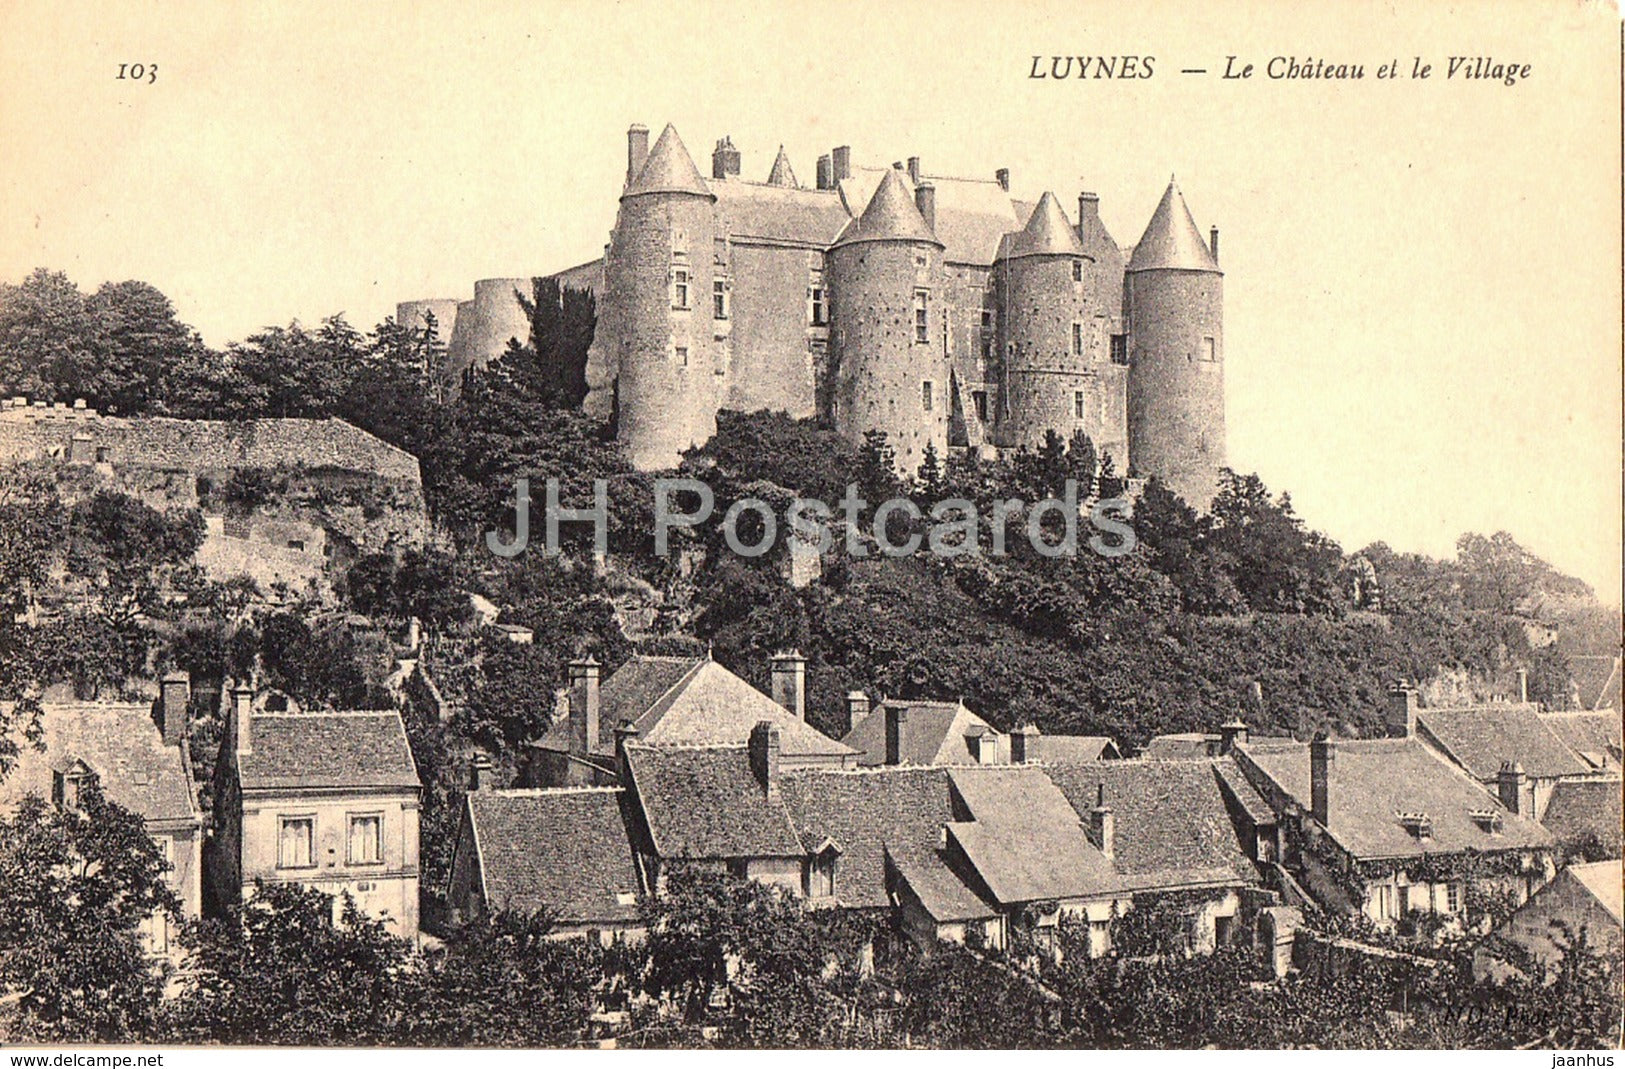 Luynes - Le Chateau et le Village - castle - 103 - old postcard - France - unused - JH Postcards